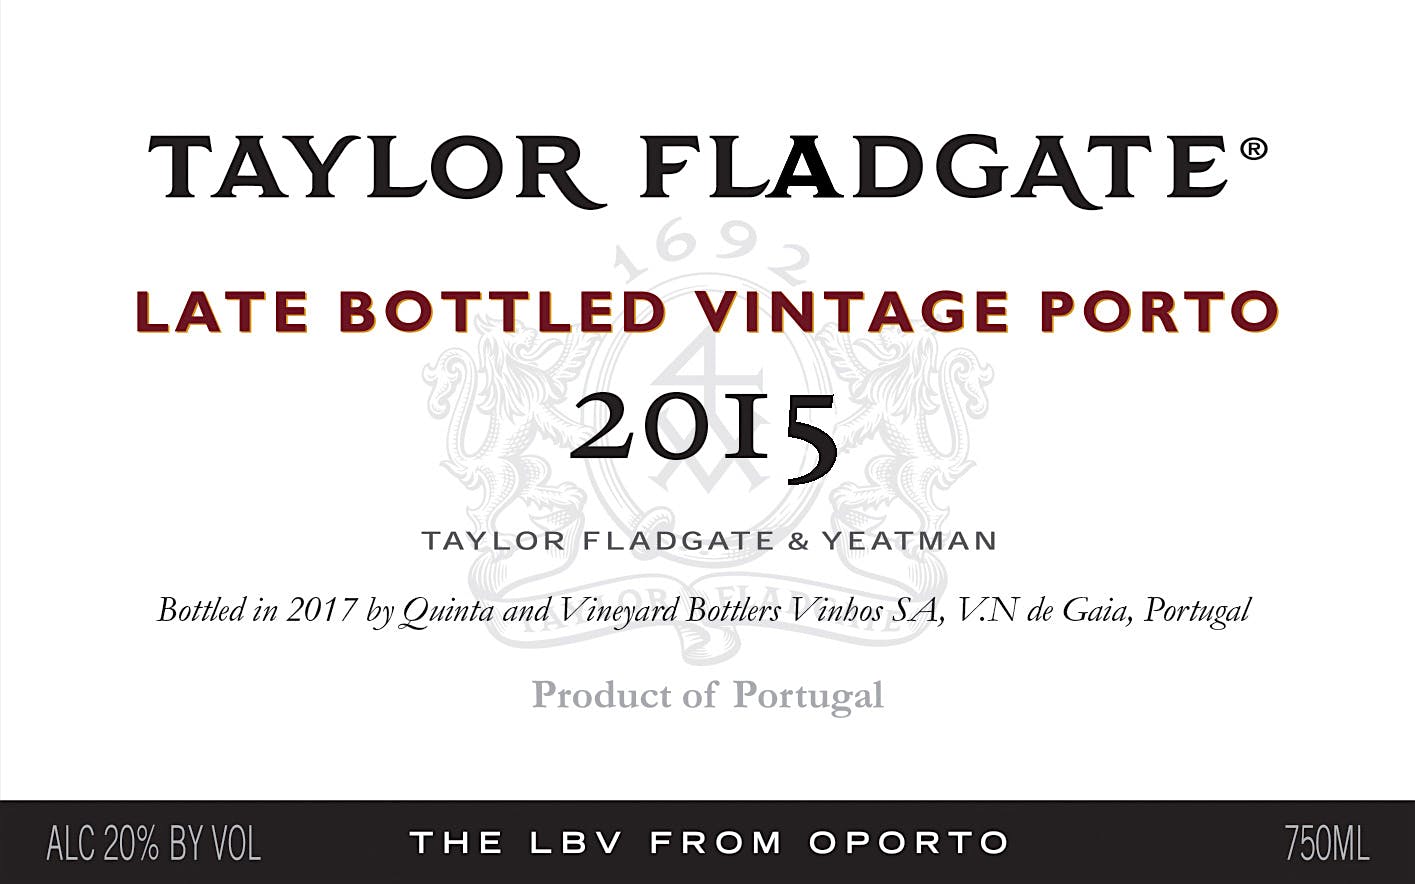 Label for Taylor Fladgate